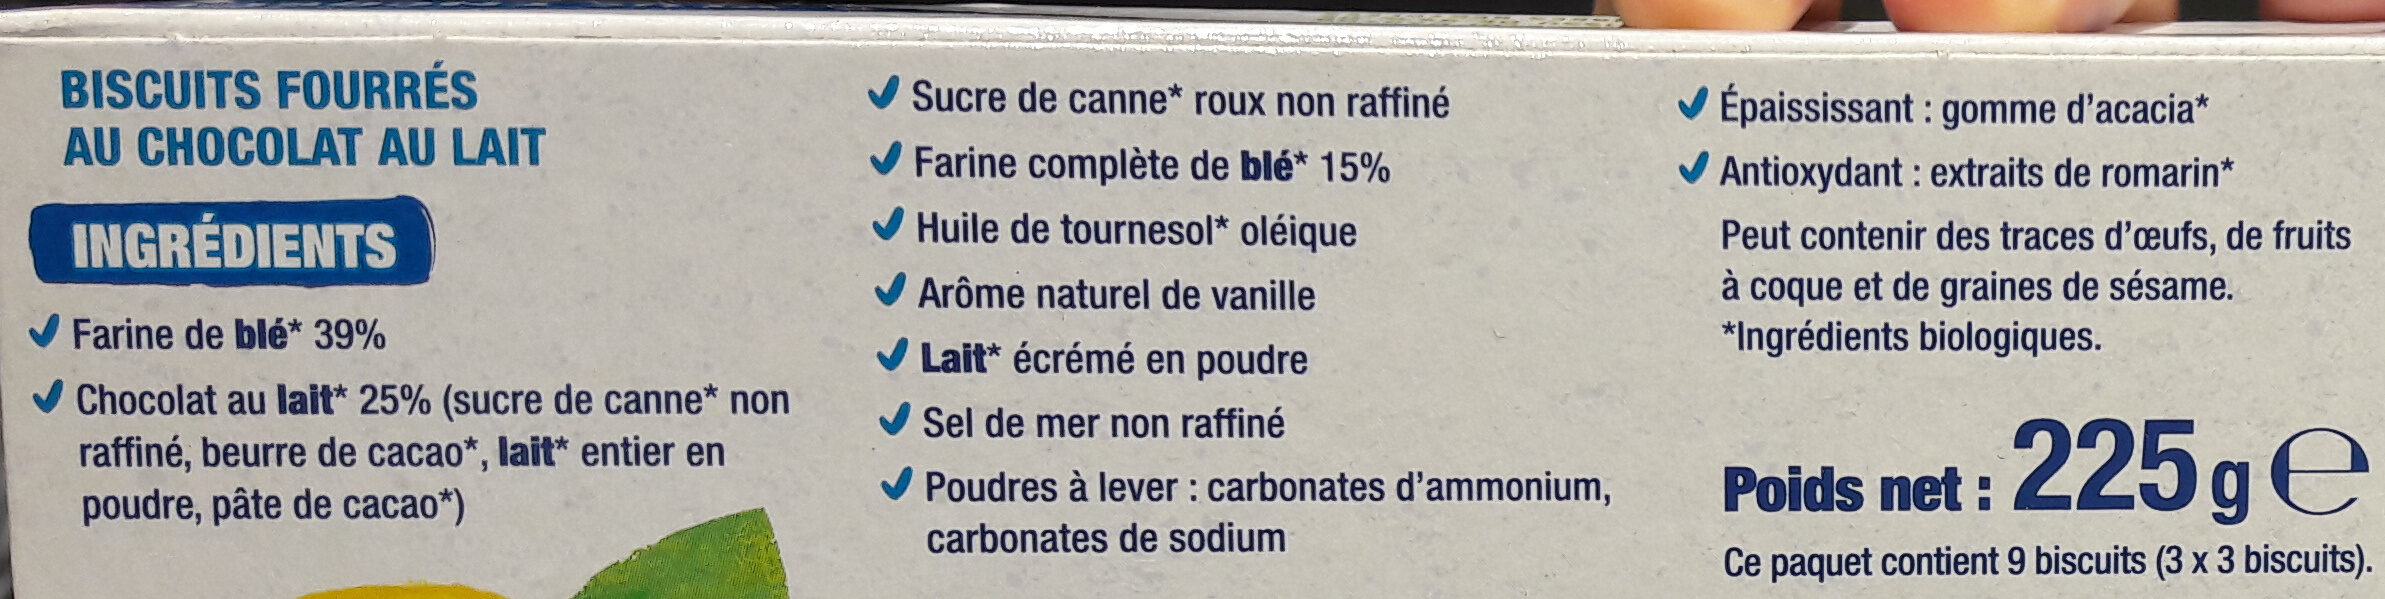 Fourrés Chocolat au lait BIO - Ingredients - fr